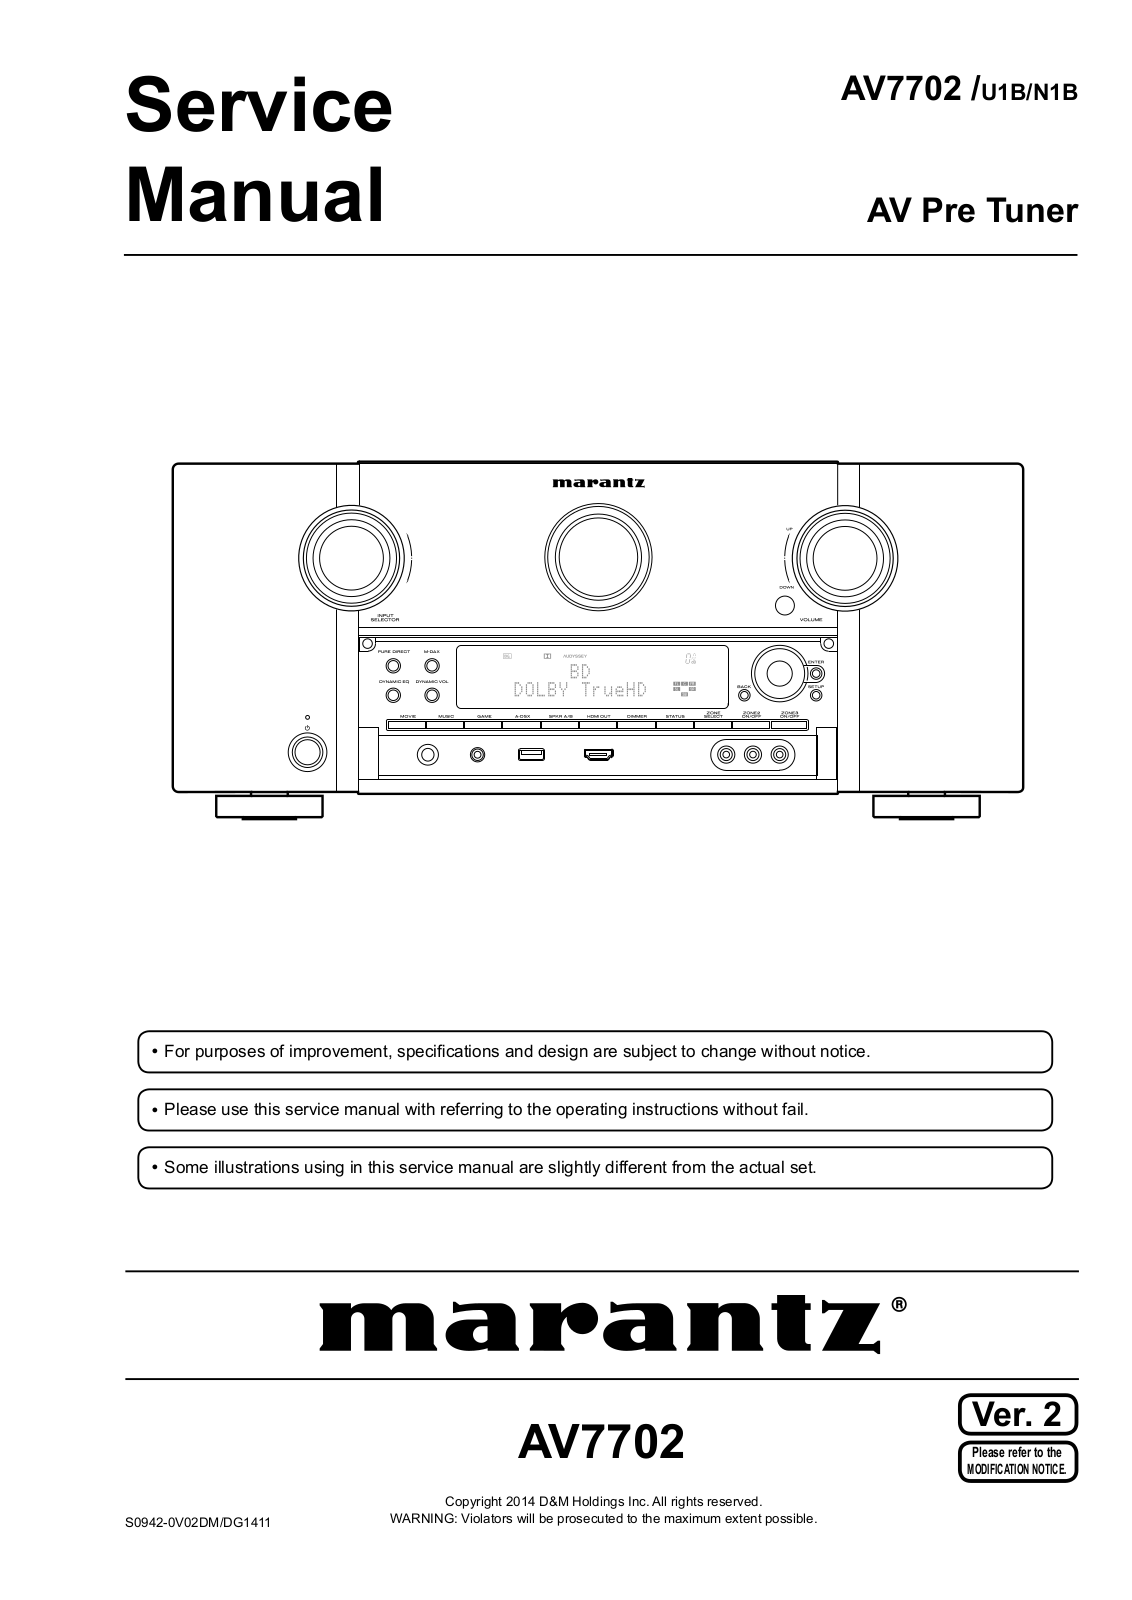 Marantz AV7002, AV7002-u1b, AV7002 n1b Service Manual